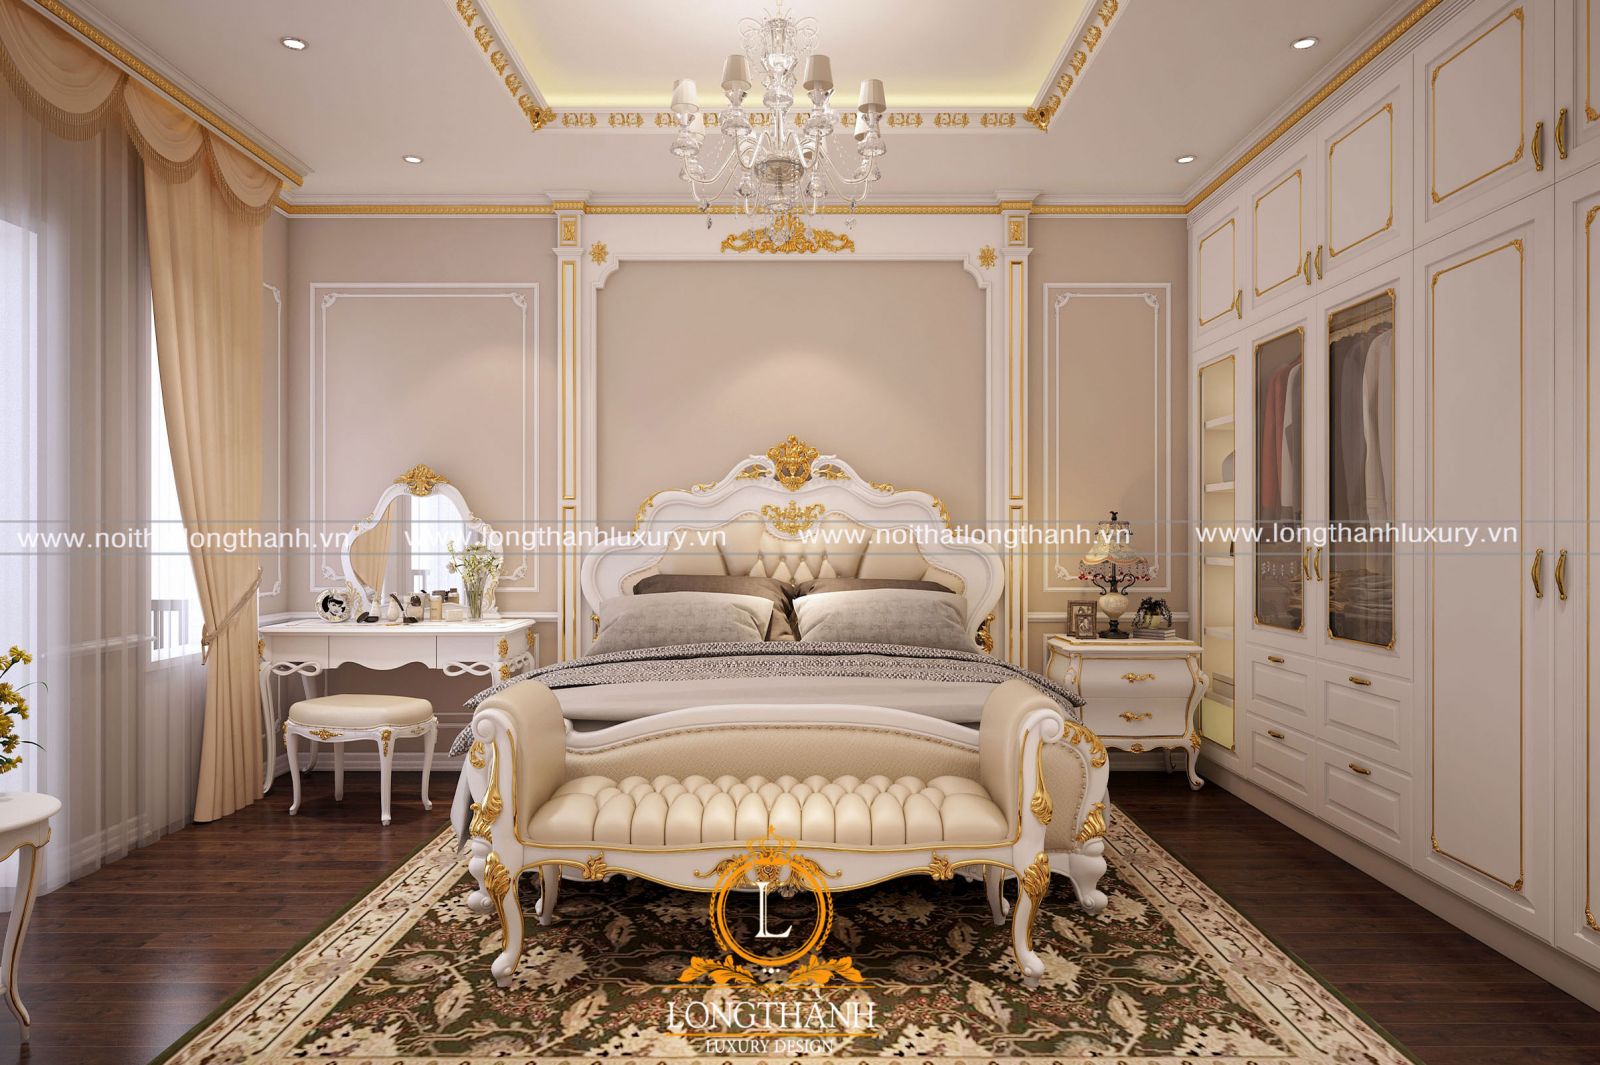 Phòng ngủ nhà biệt thự mini theo kiểu tân cổ điển sơn trắng